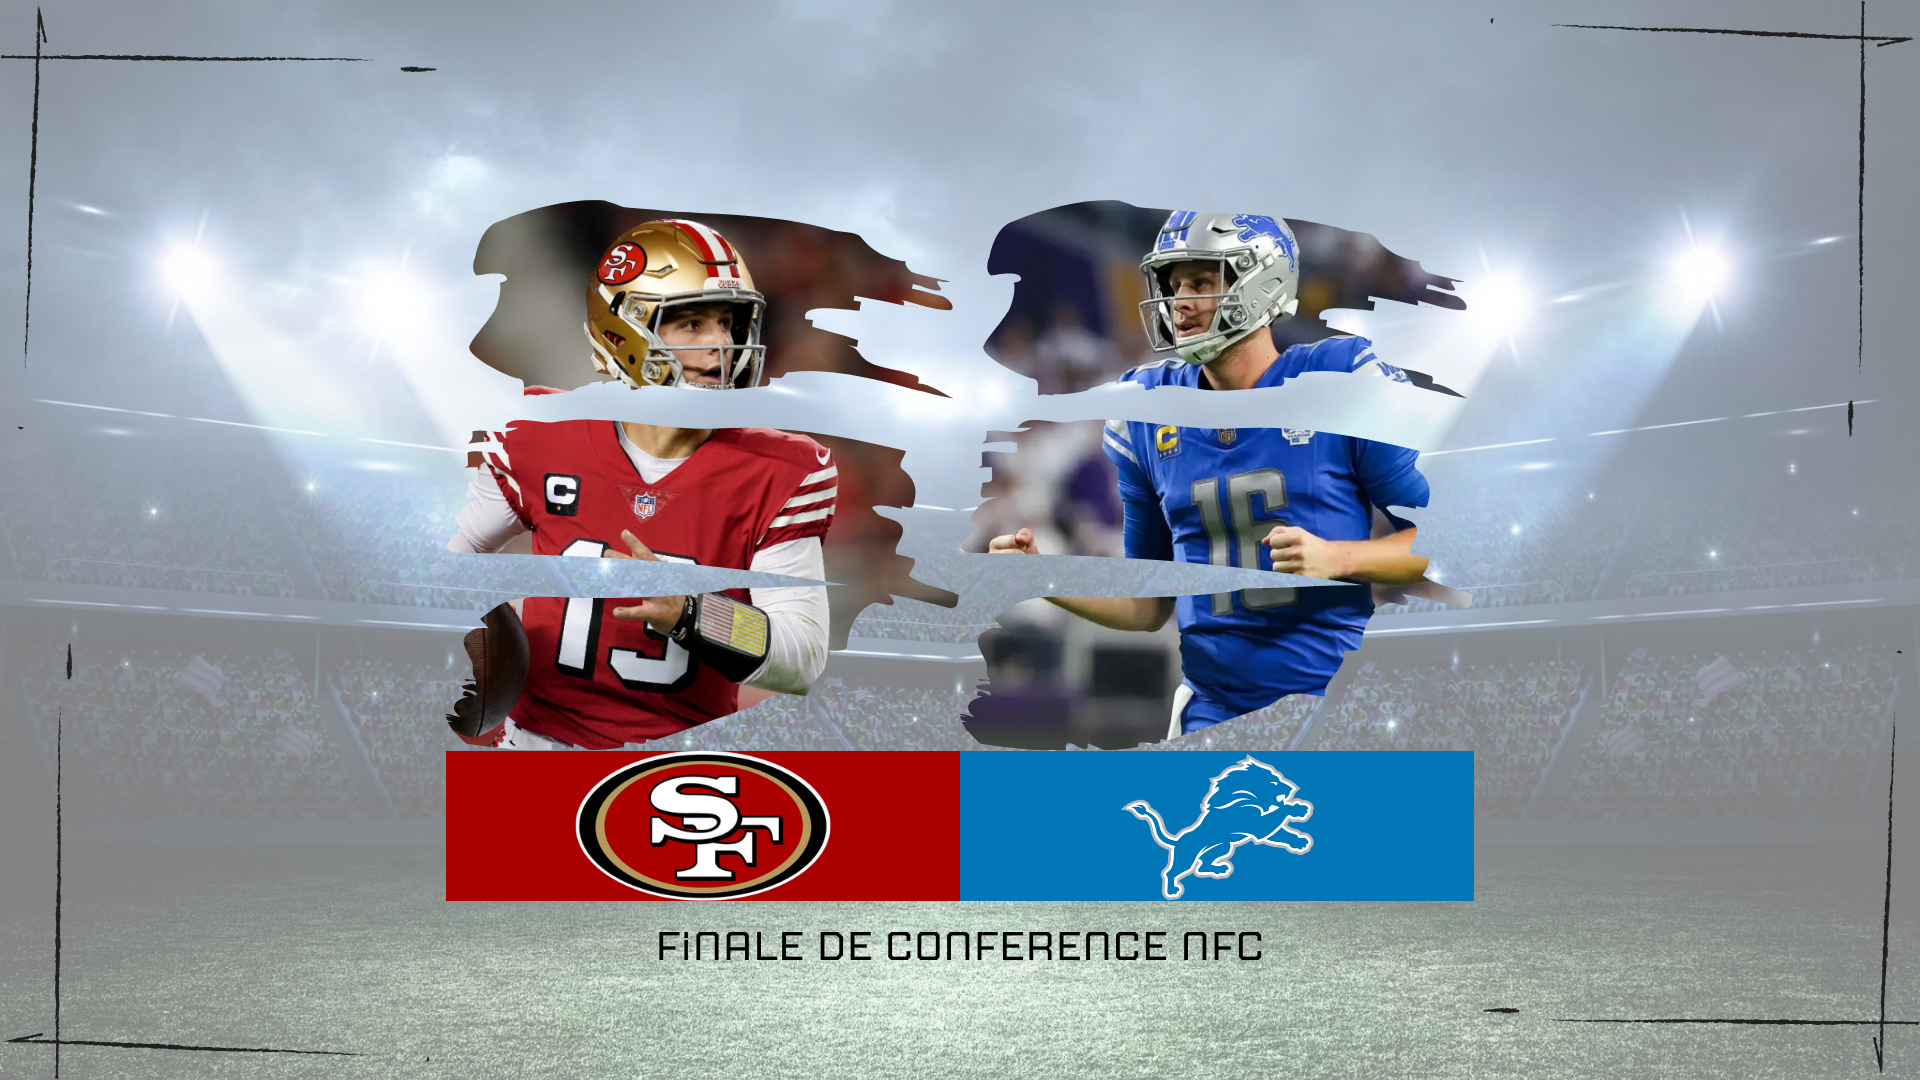 NFL – Présentation de la finale de conférence NFC entre les 49ers et les Lions